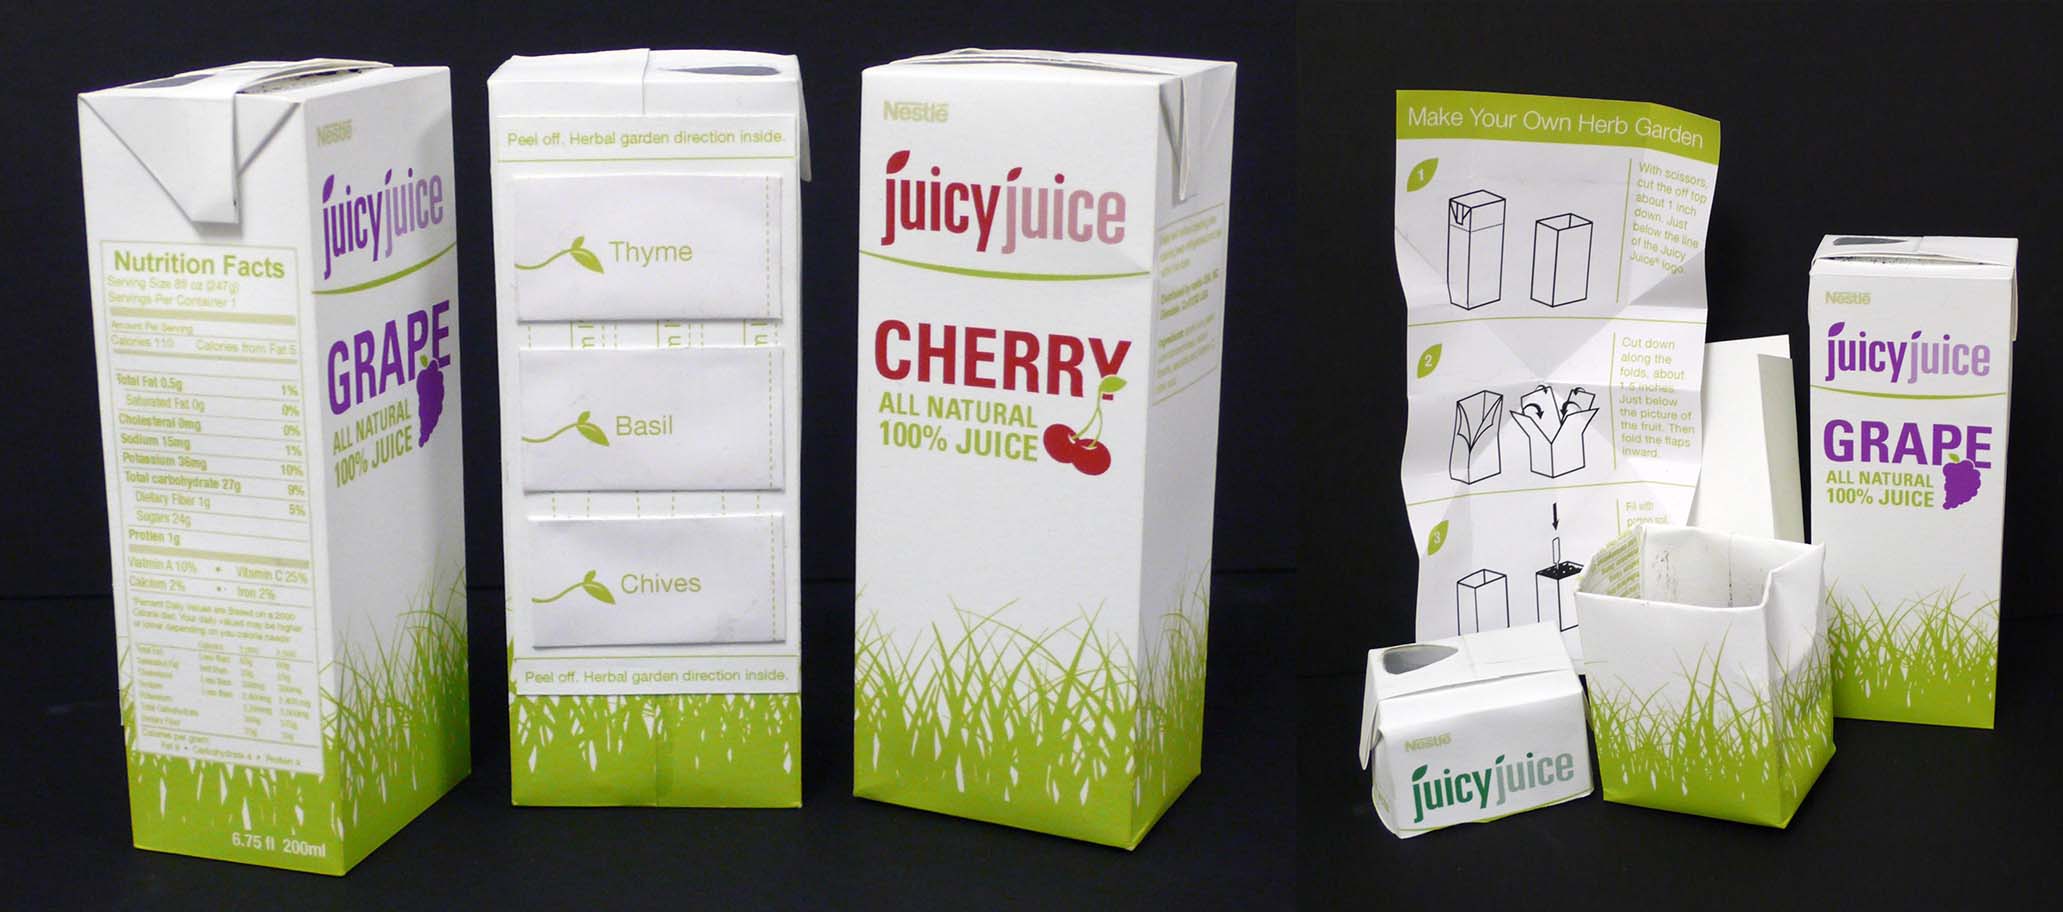 Juicy Juice redesign